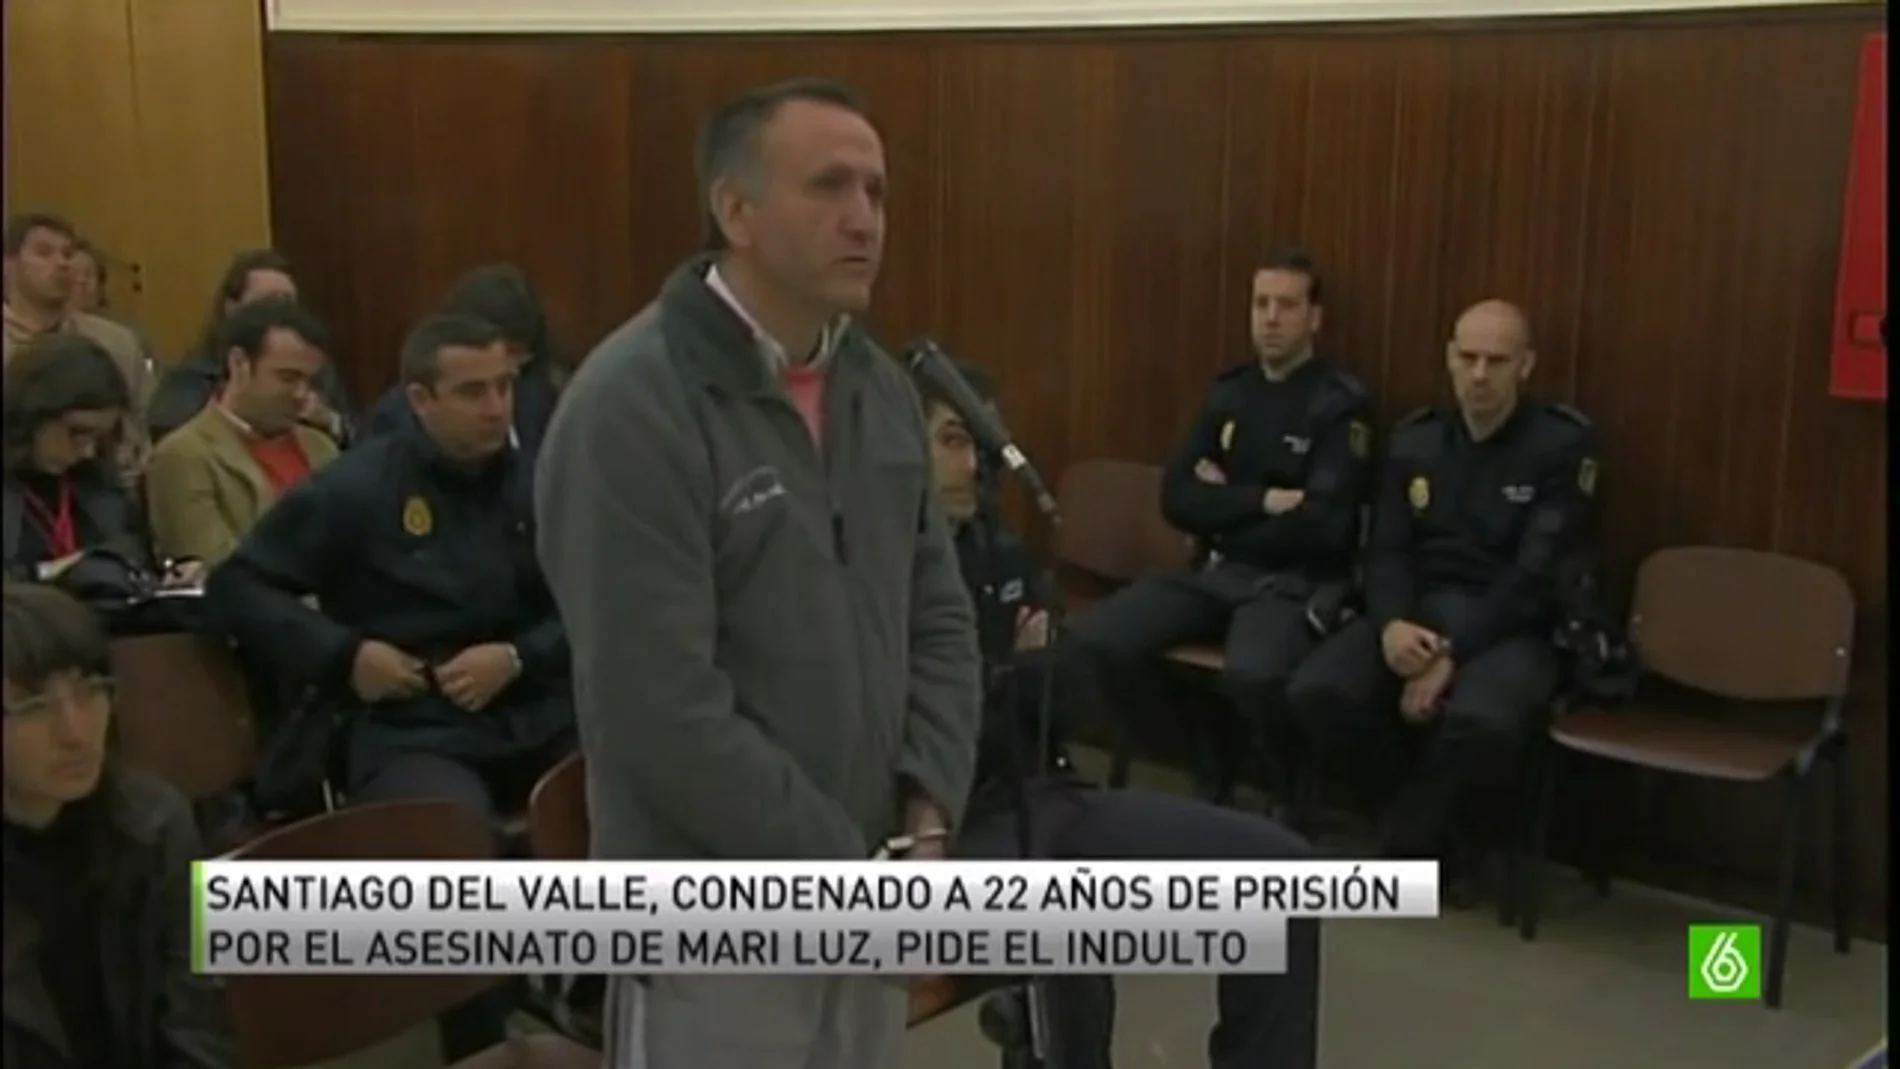 Santiago del Valle pide el indulto por la ausencia de pruebas científicas